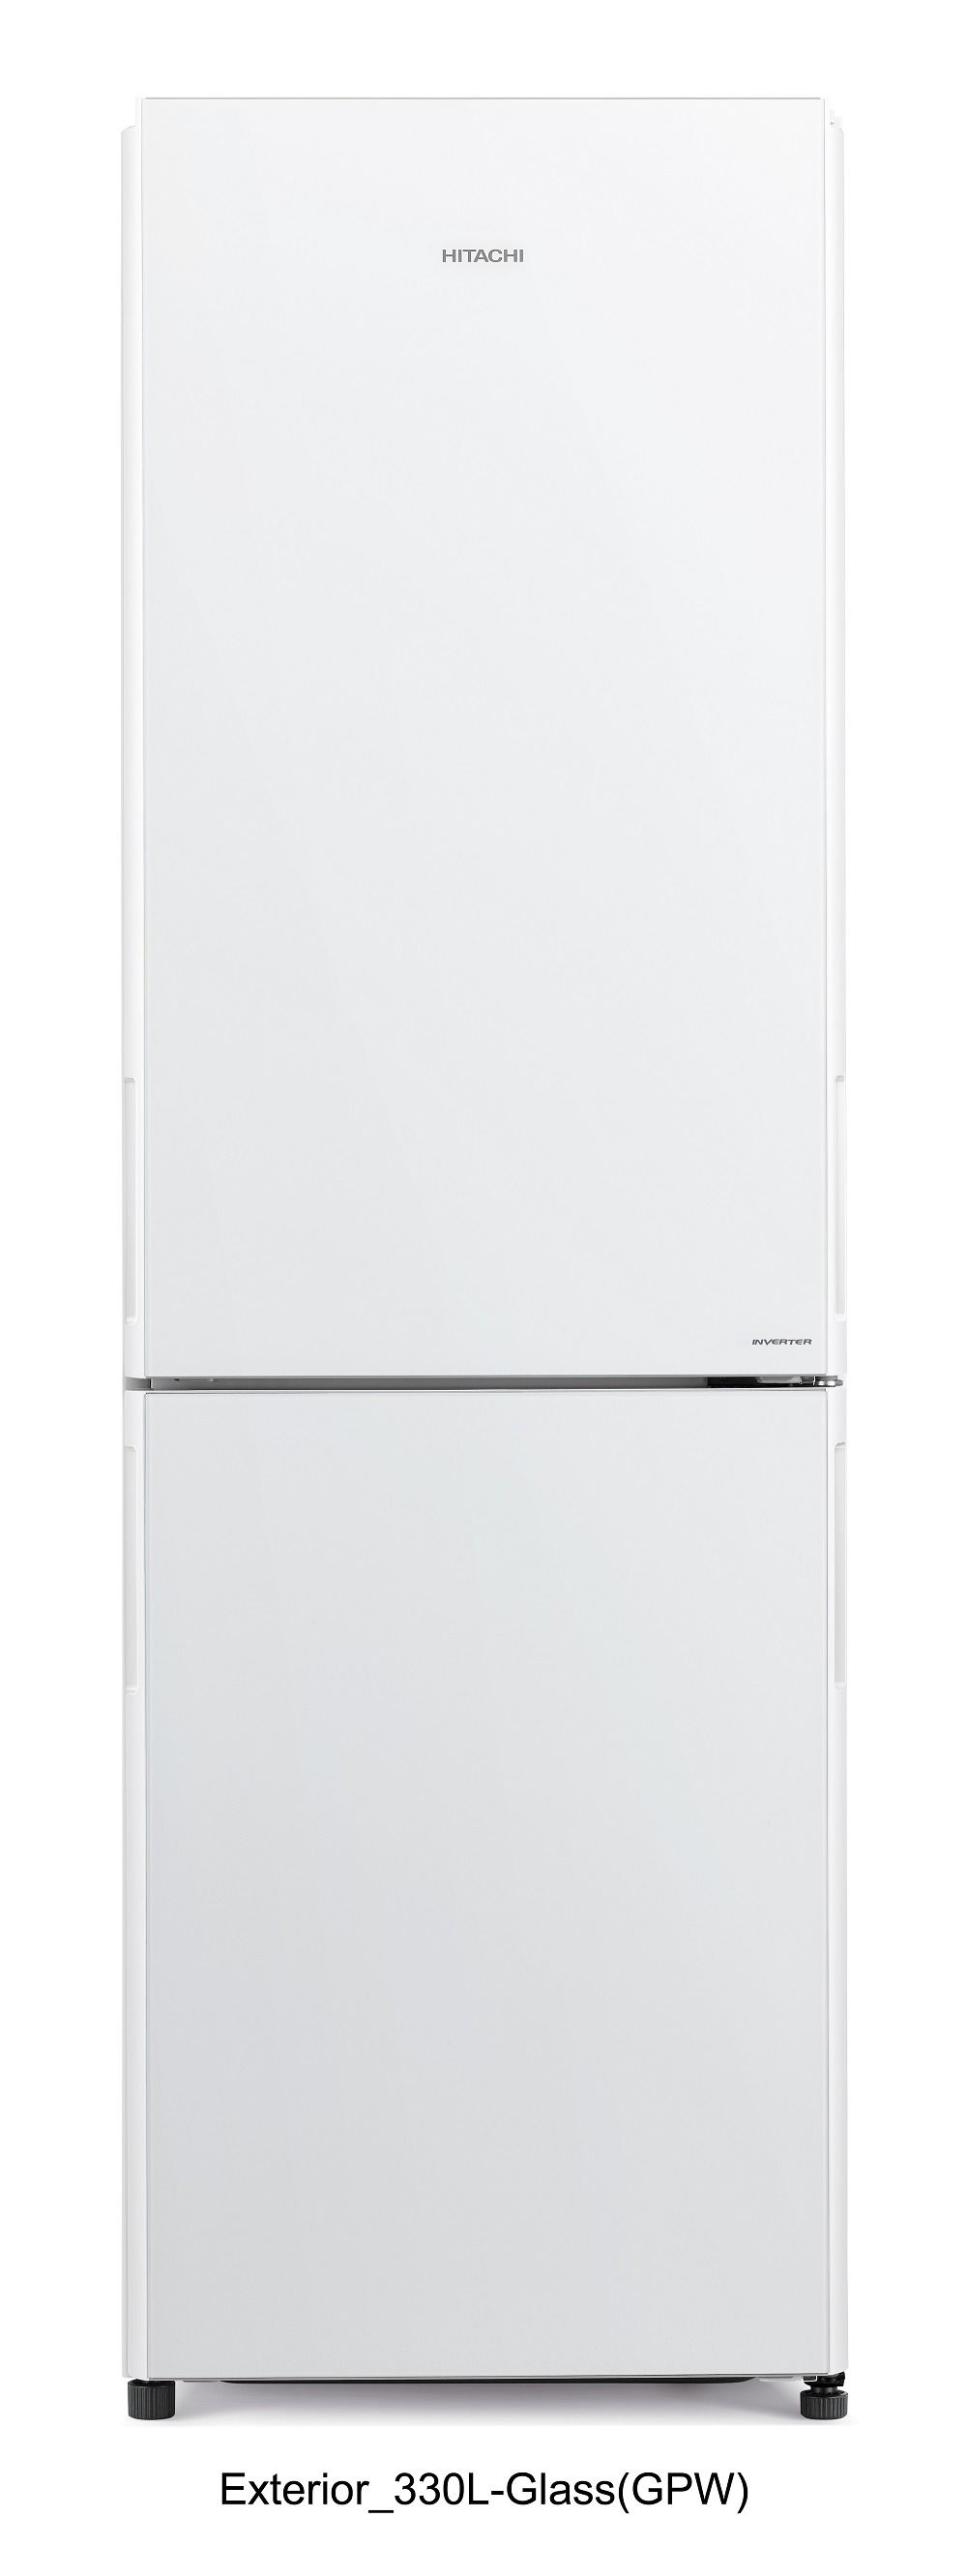 Hitachi RBG410PUK6GPW 410L Bottom Freezer, White